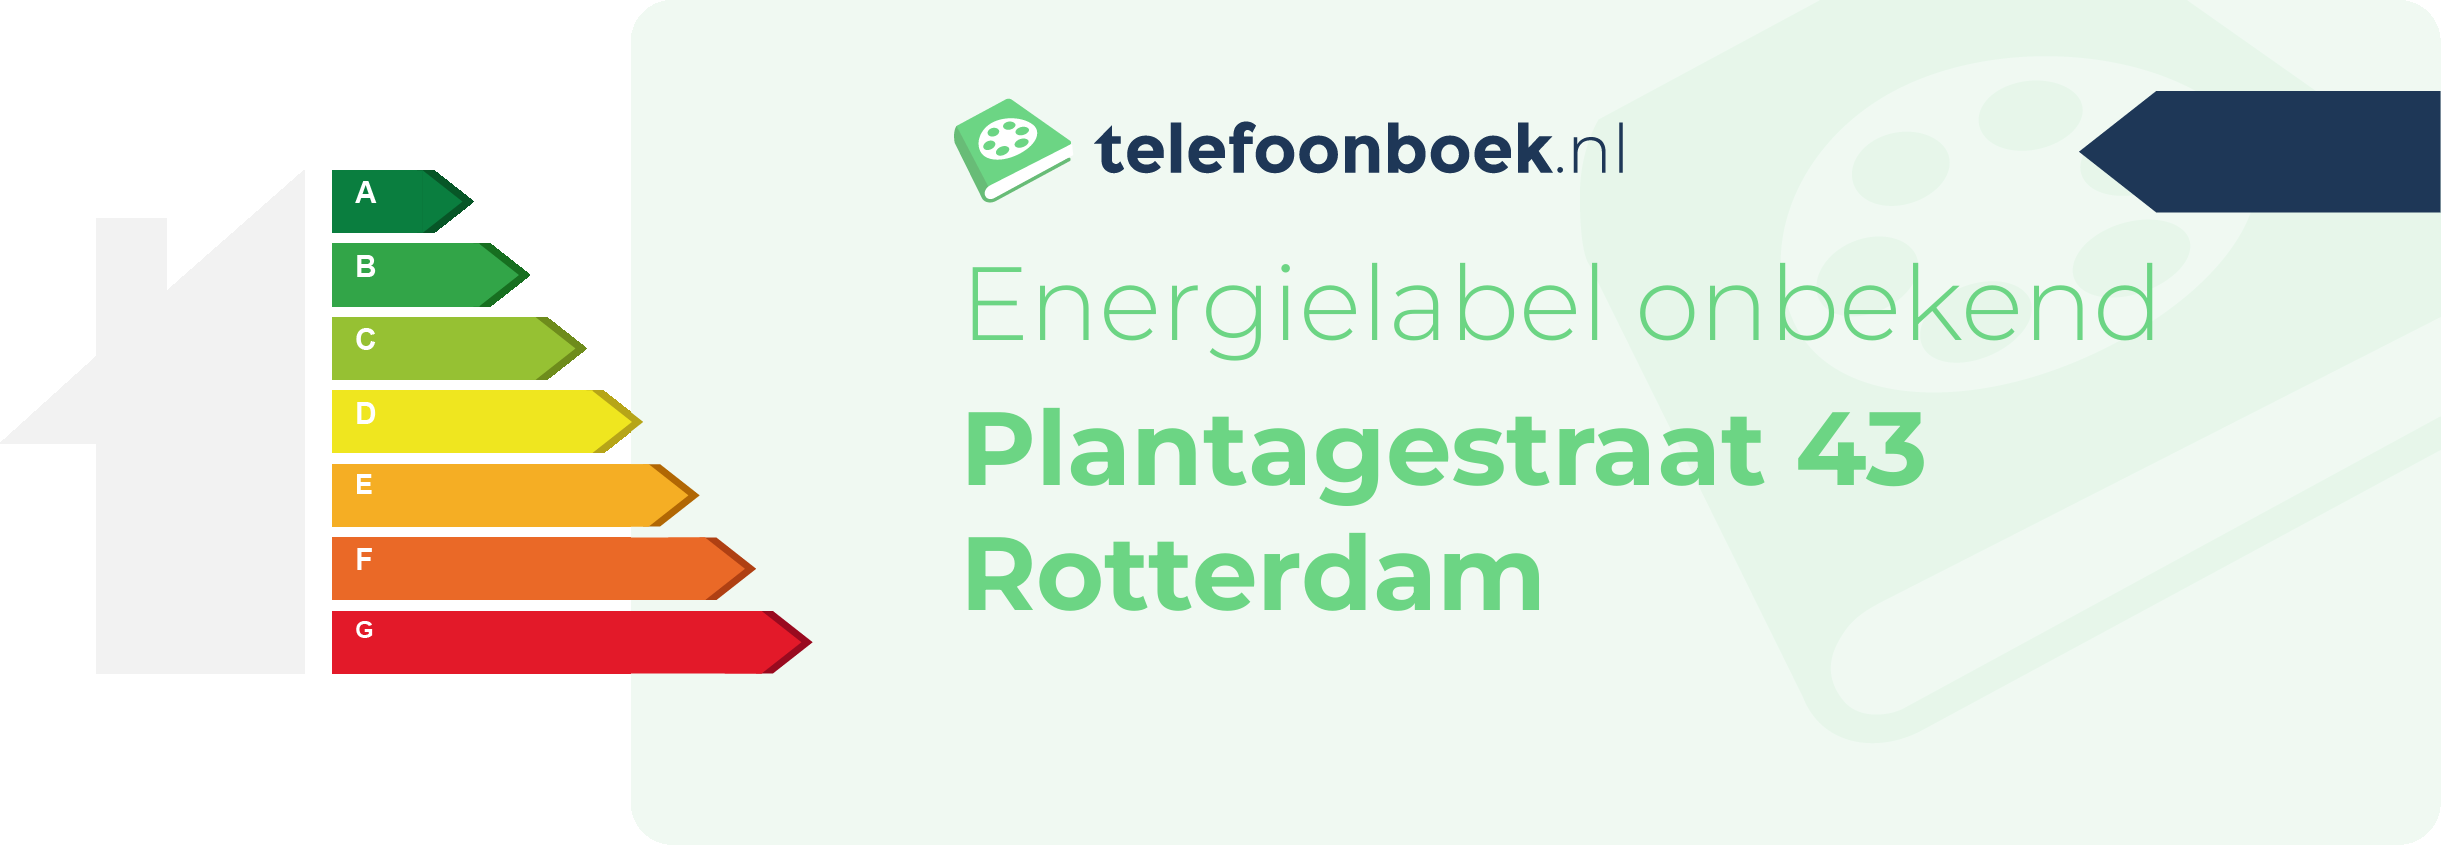 Energielabel Plantagestraat 43 Rotterdam